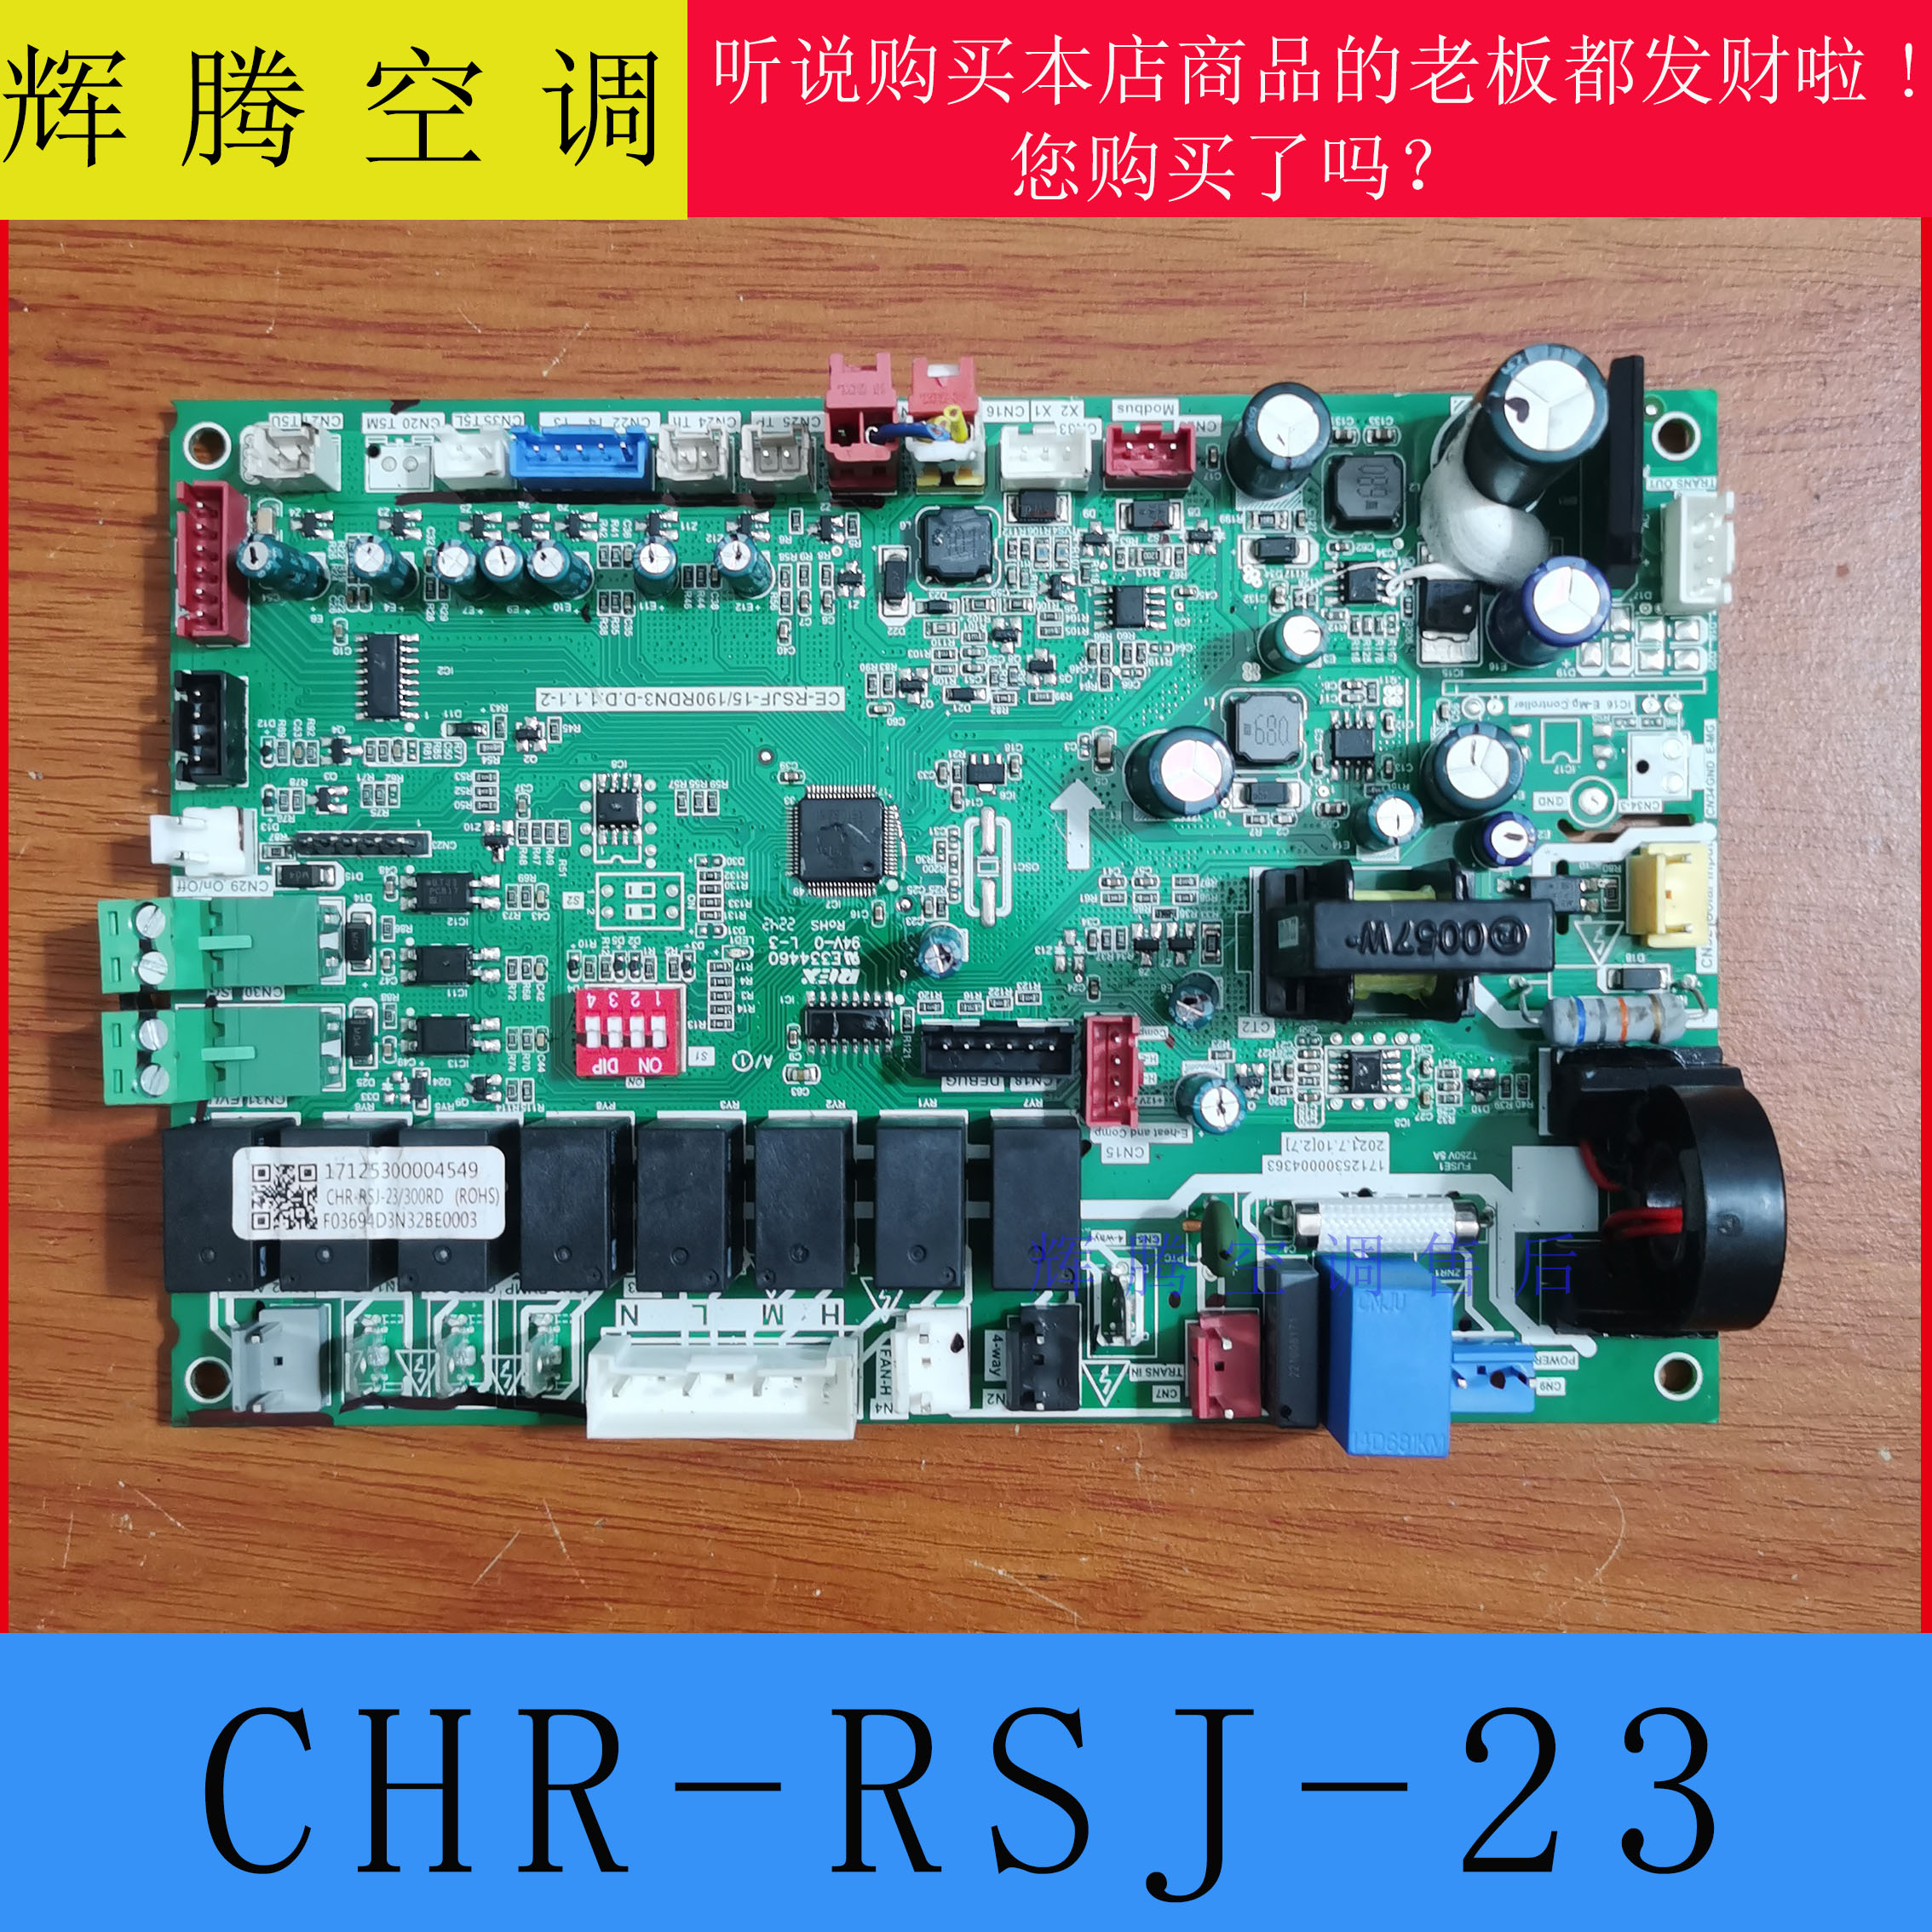 美的多联机空调主板CHR-RSJ-23电脑板 17125300004549 CE-RSJF-15